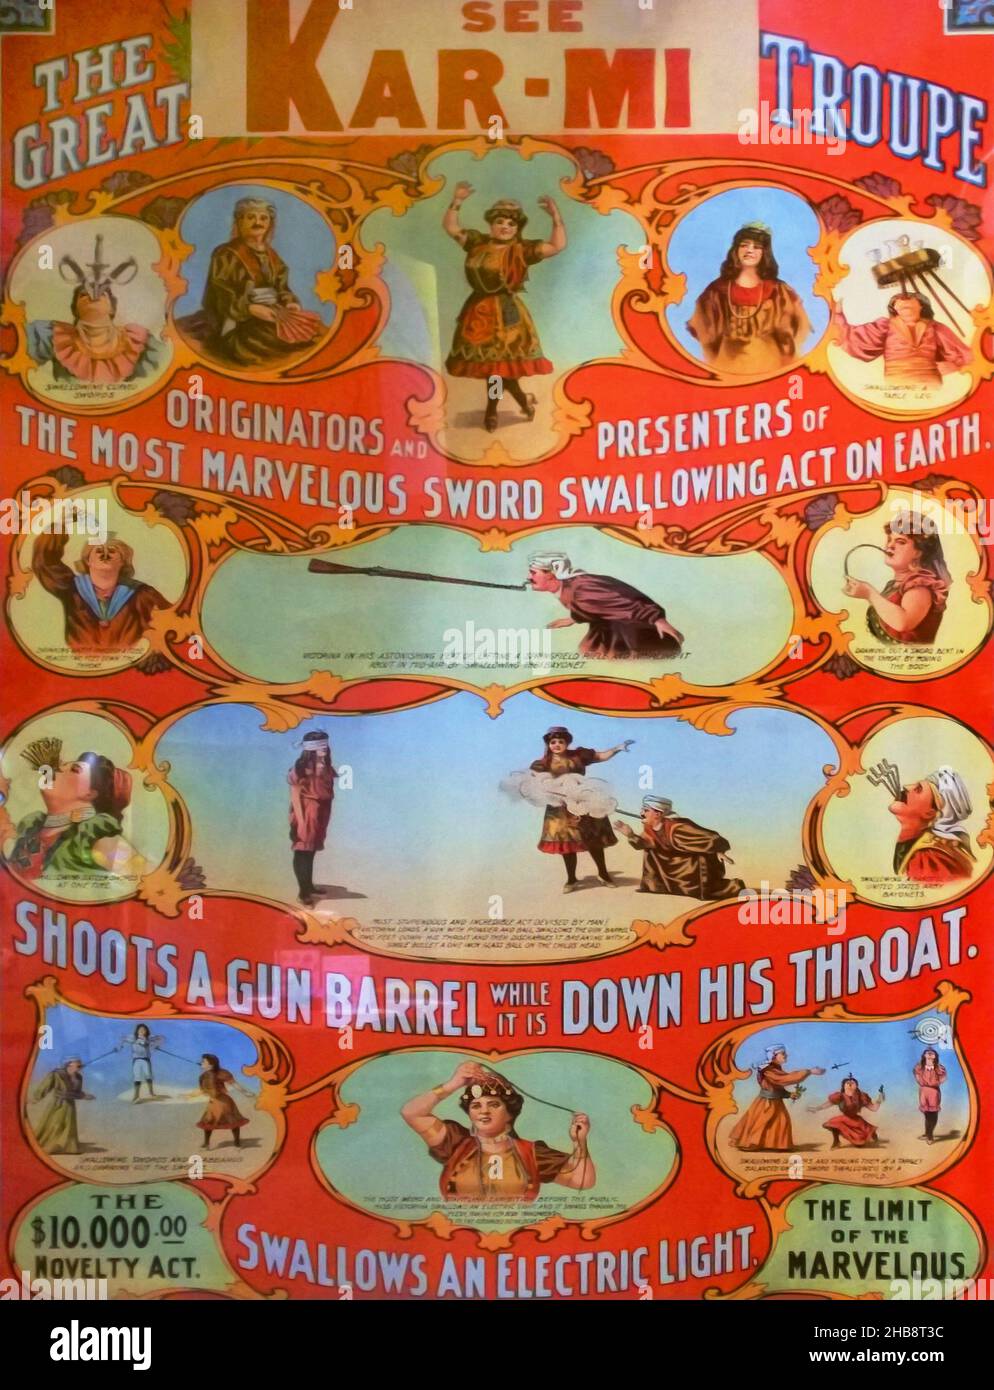 Rochester, New York, Stati Uniti. Dicembre 16, 2021. Poster vintage del grande Kar-mi Troupe, un gruppo di intrattenimento che sfida la morte dalla fine del centu Foto Stock